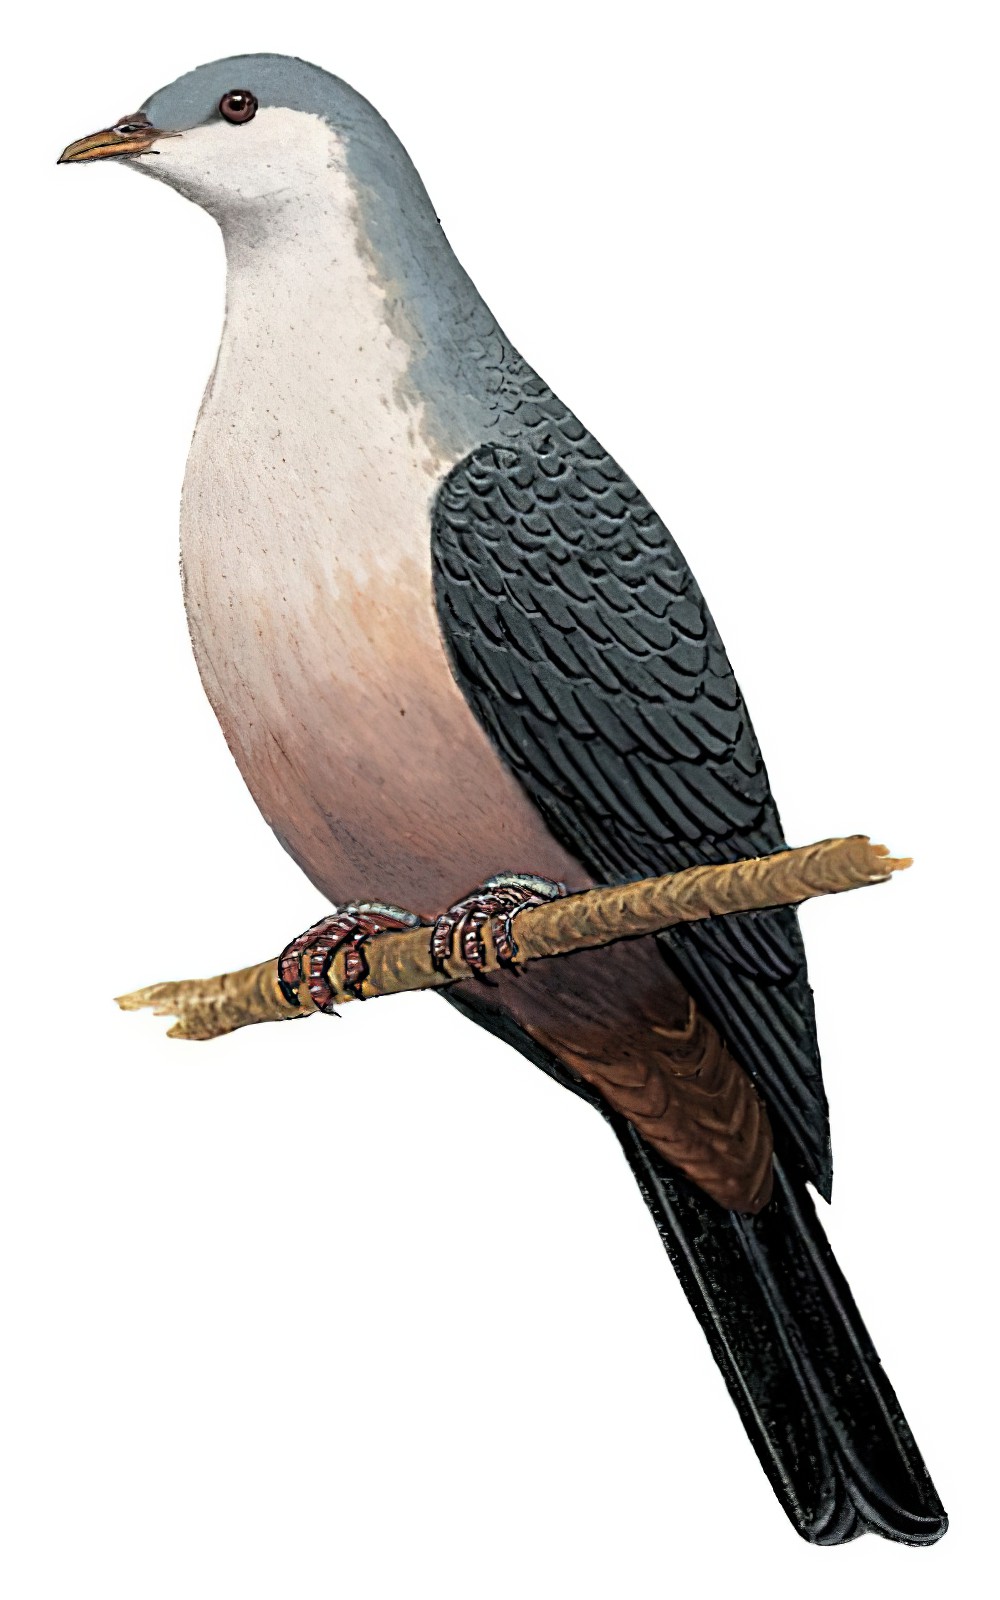 Buru Mountain-Pigeon / Gymnophaps mada